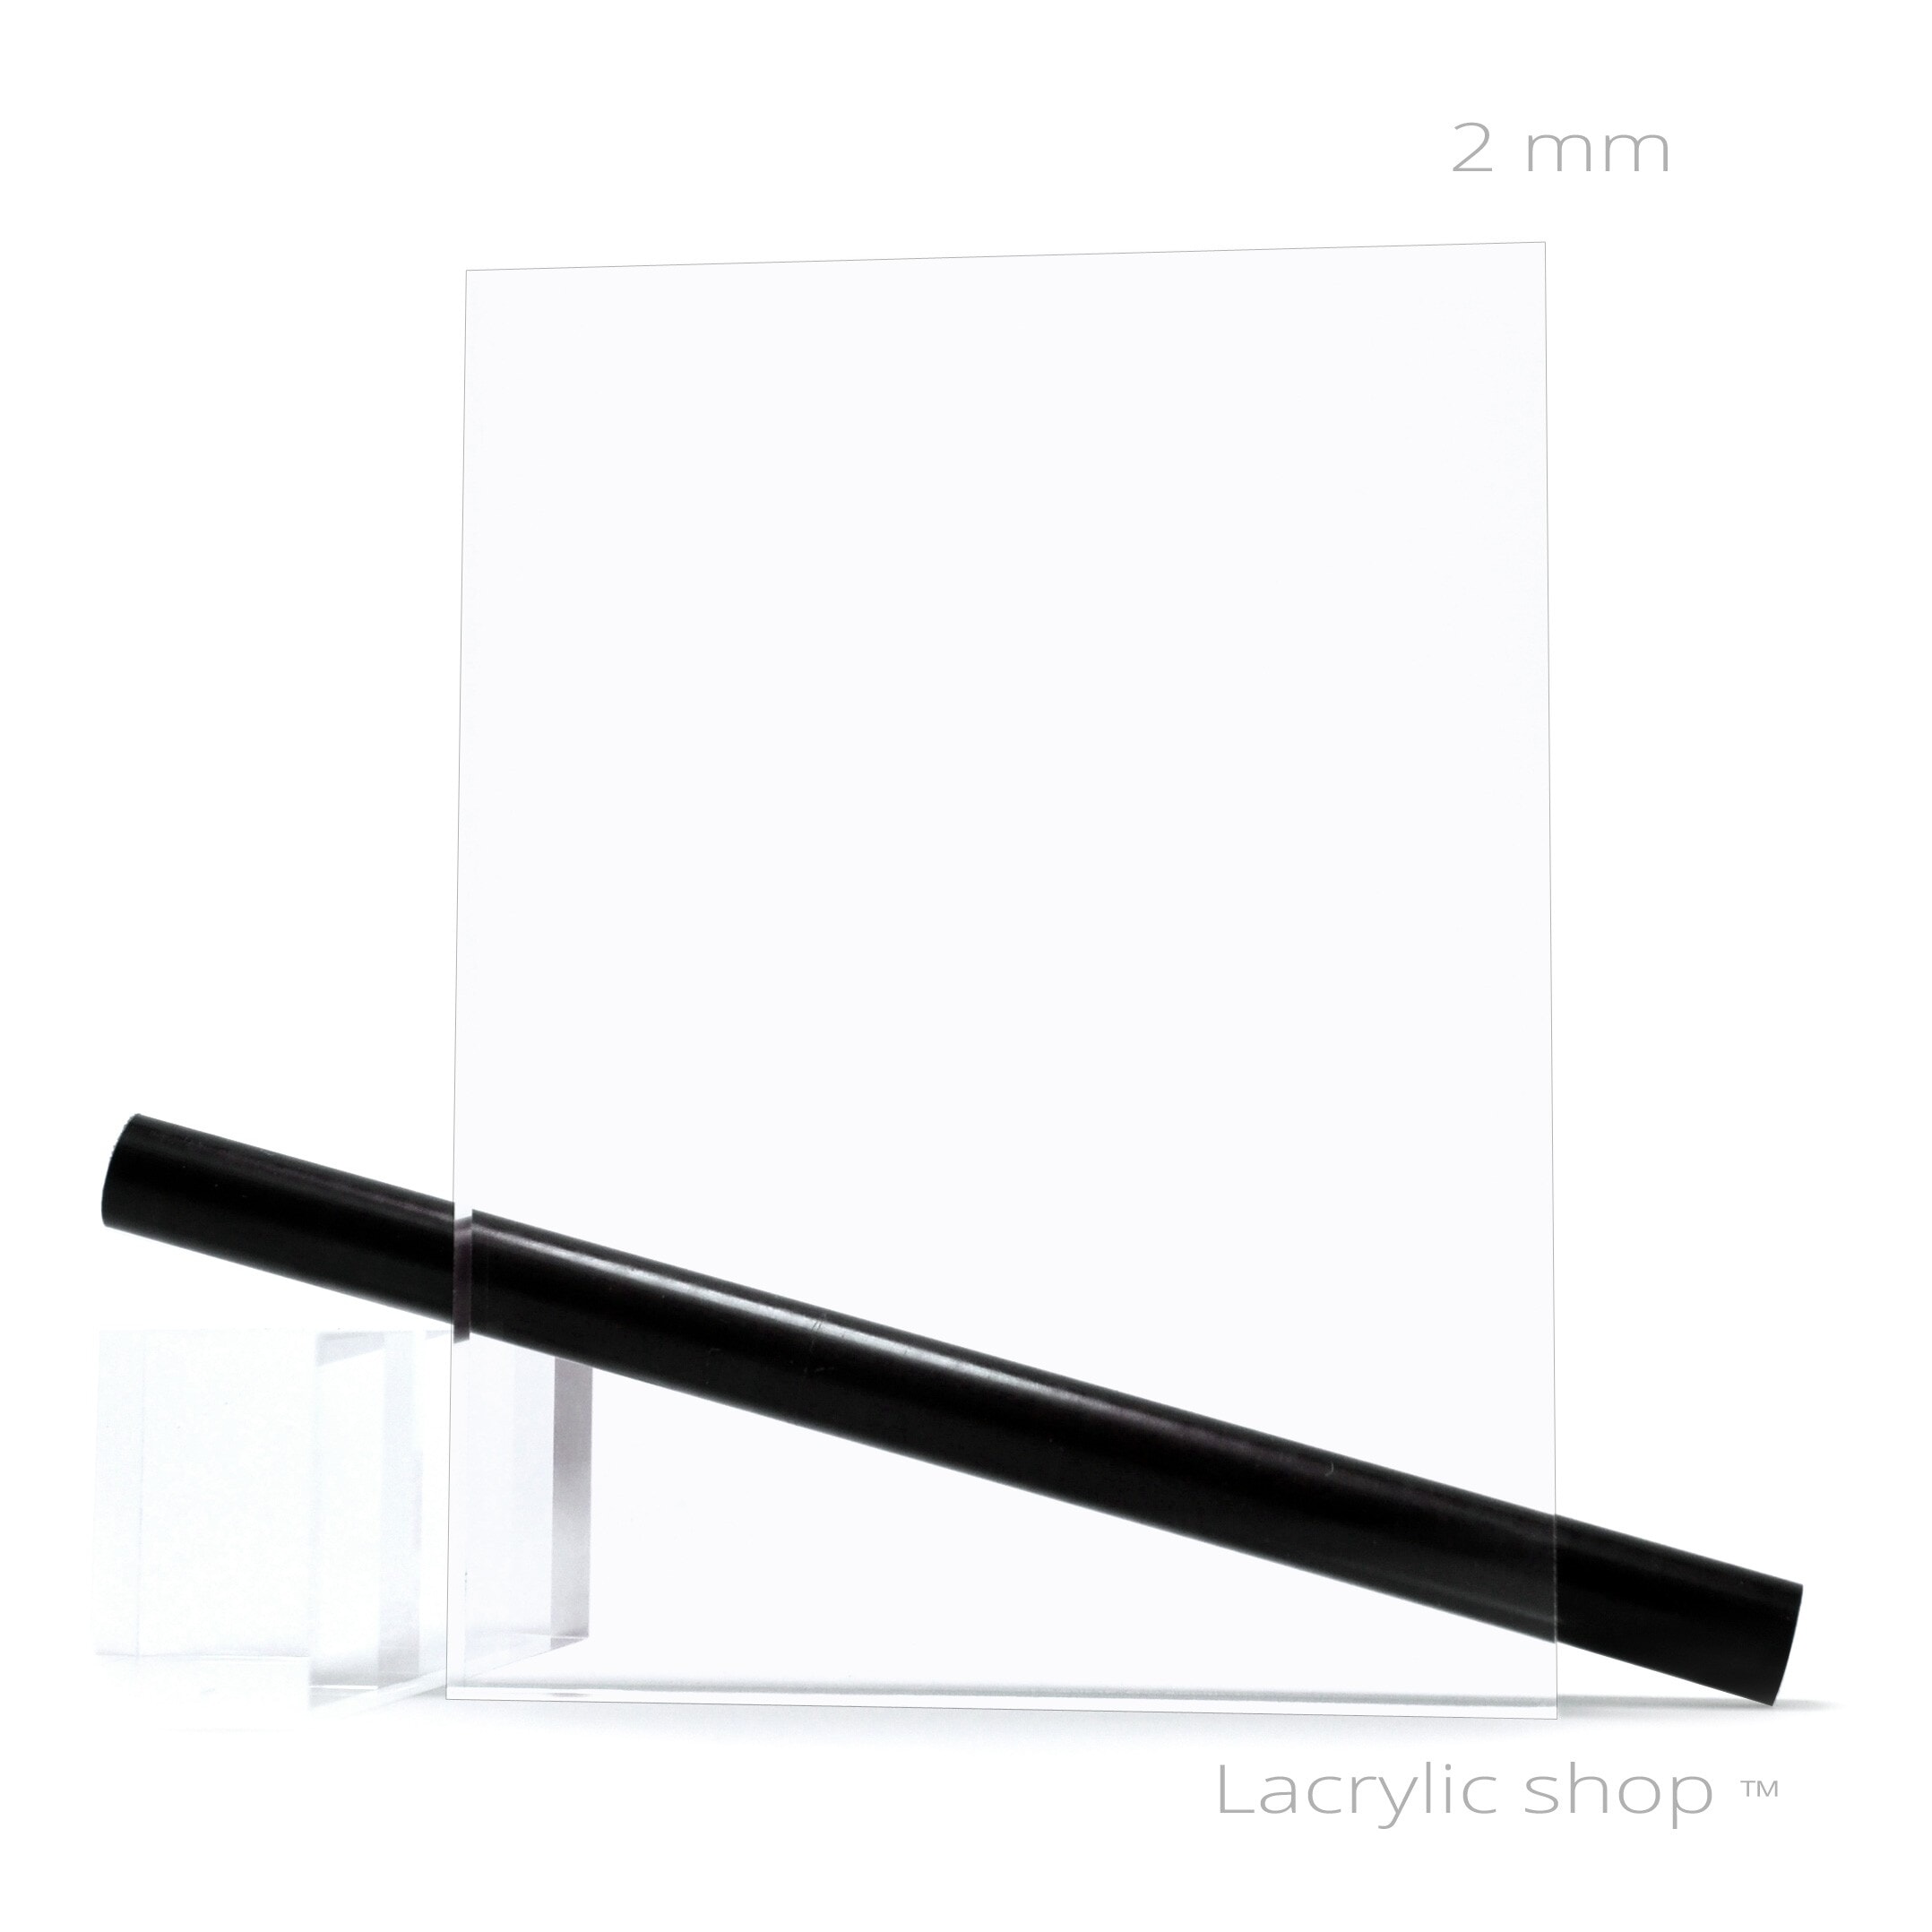 Plaque de Plexiglass Noir - Épaisseur 2 ou 4 mm - Plexi PMMA XT Noir